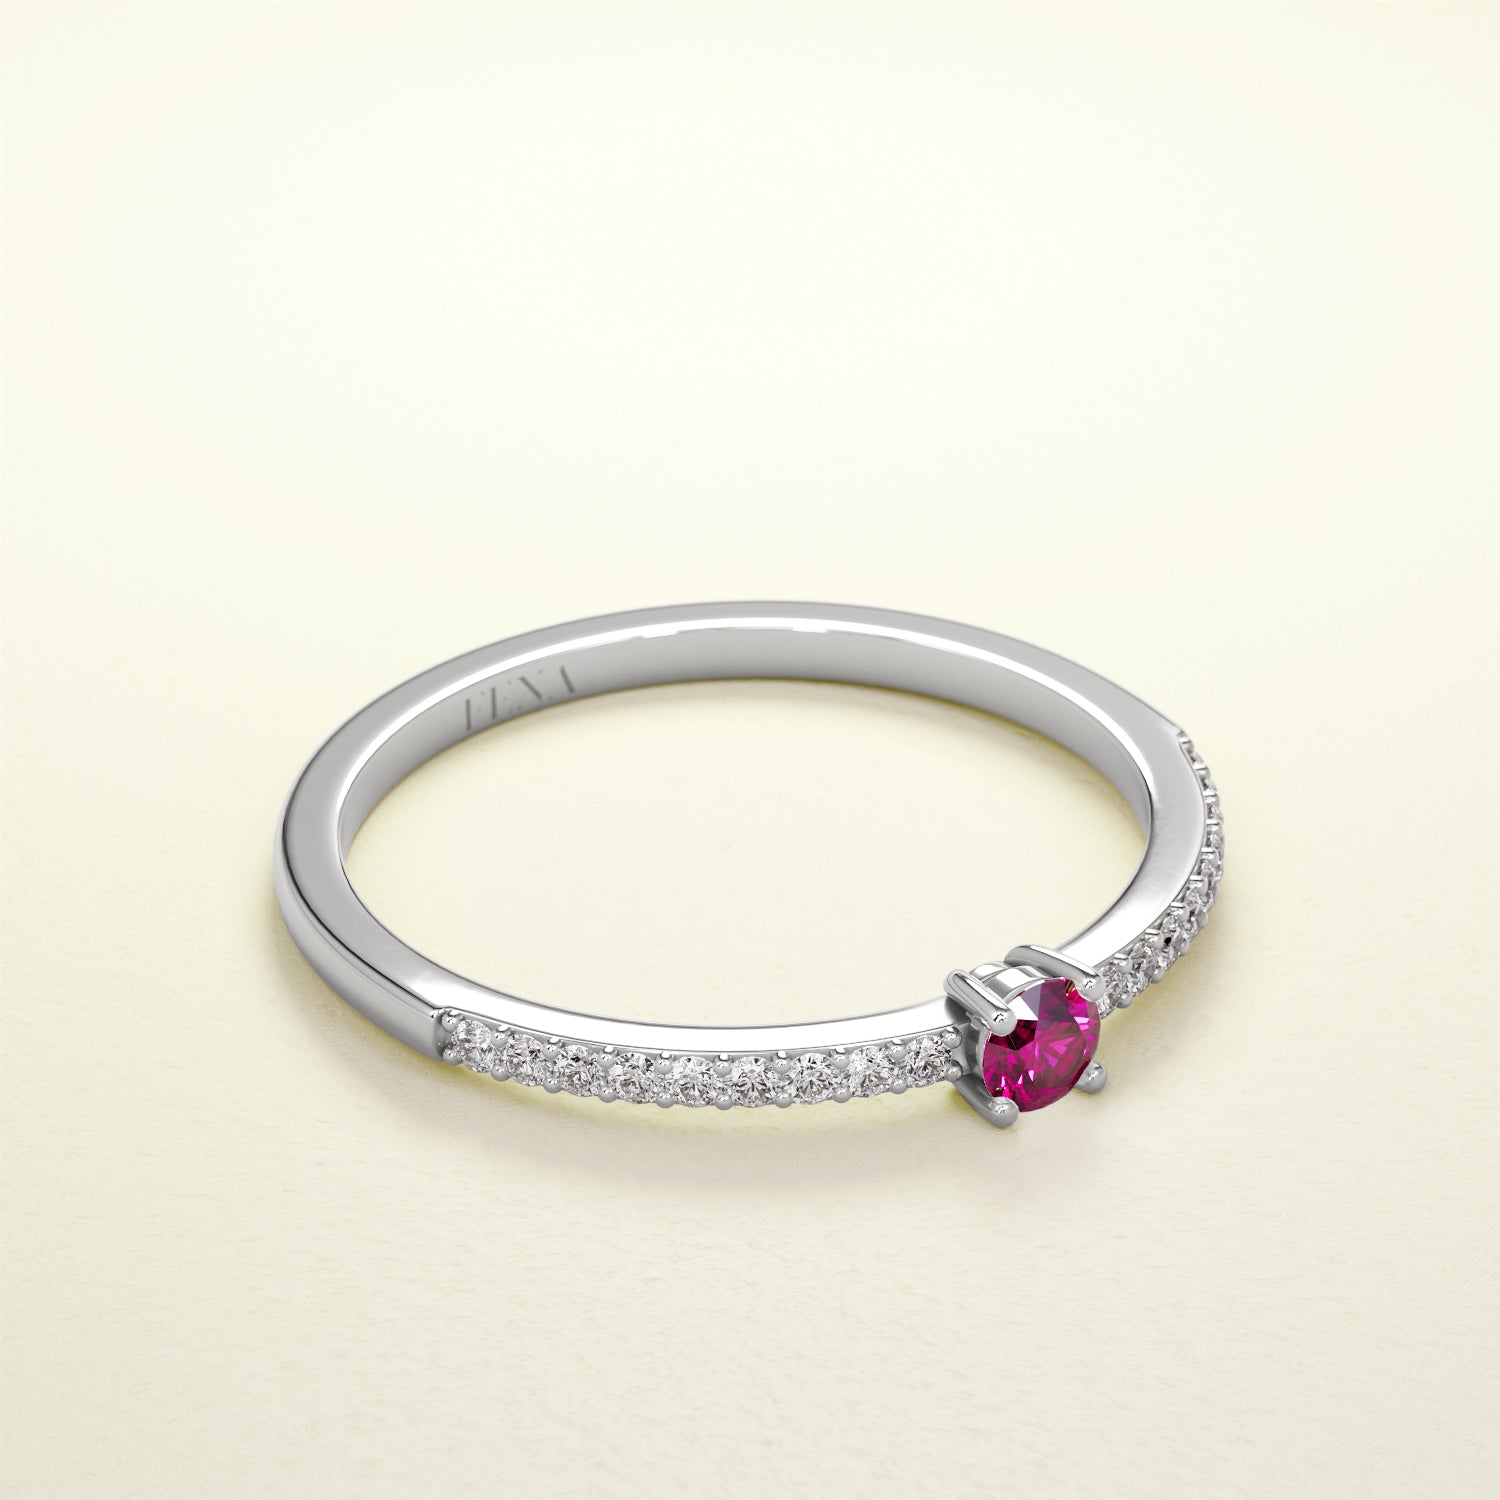 Birthstone Ring Jänner in Weißgold mit rotem Granat und Diamanten. Von FENA daily Jewellery.